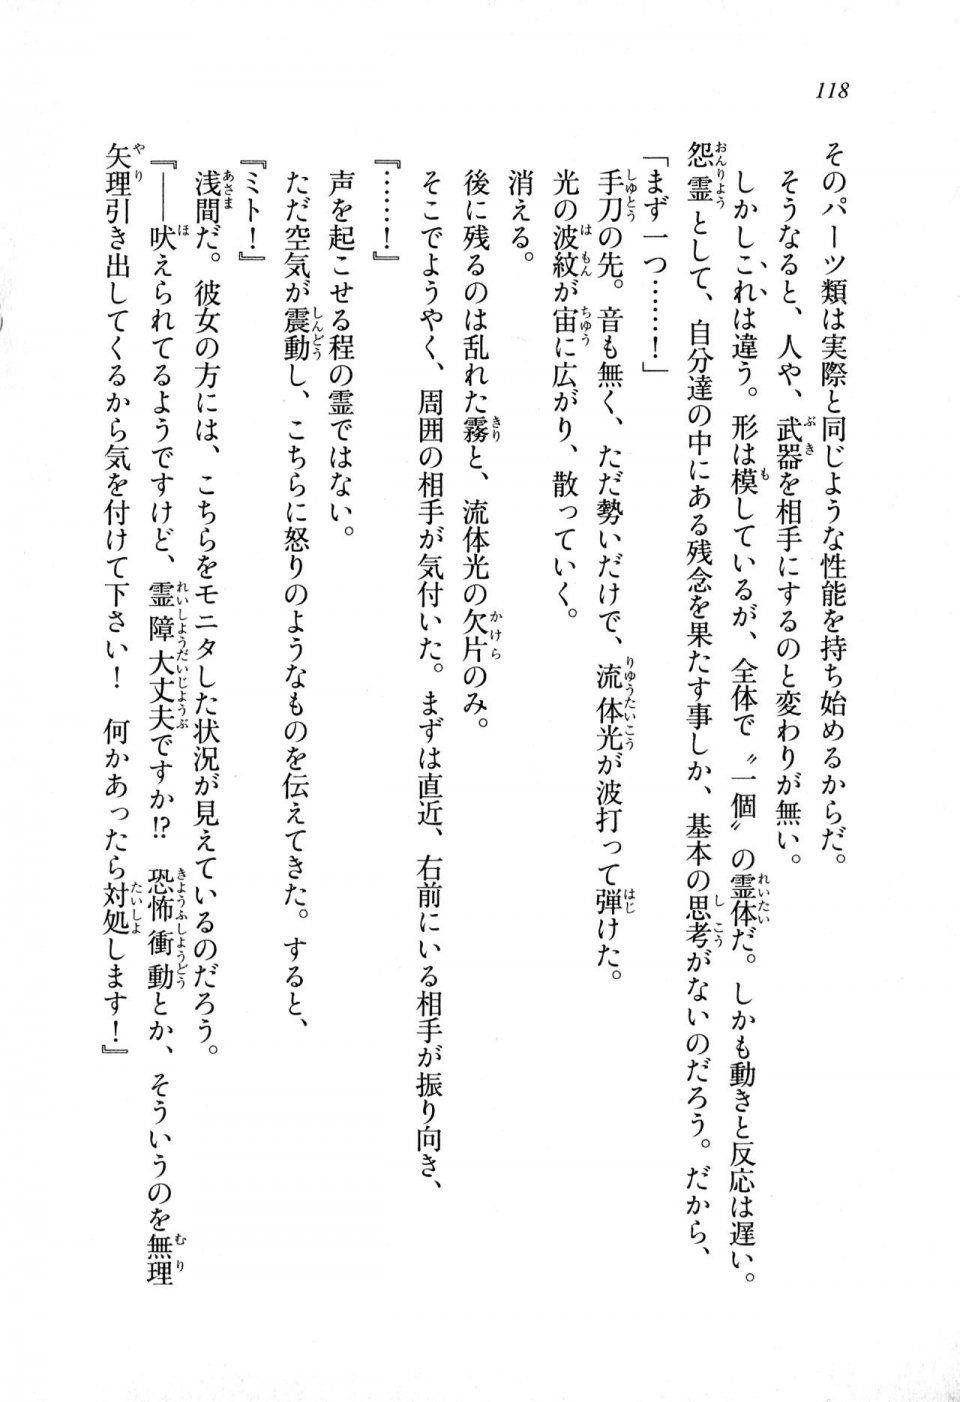 Kyoukai Senjou no Horizon LN Sidestory Vol 1 - Photo #116